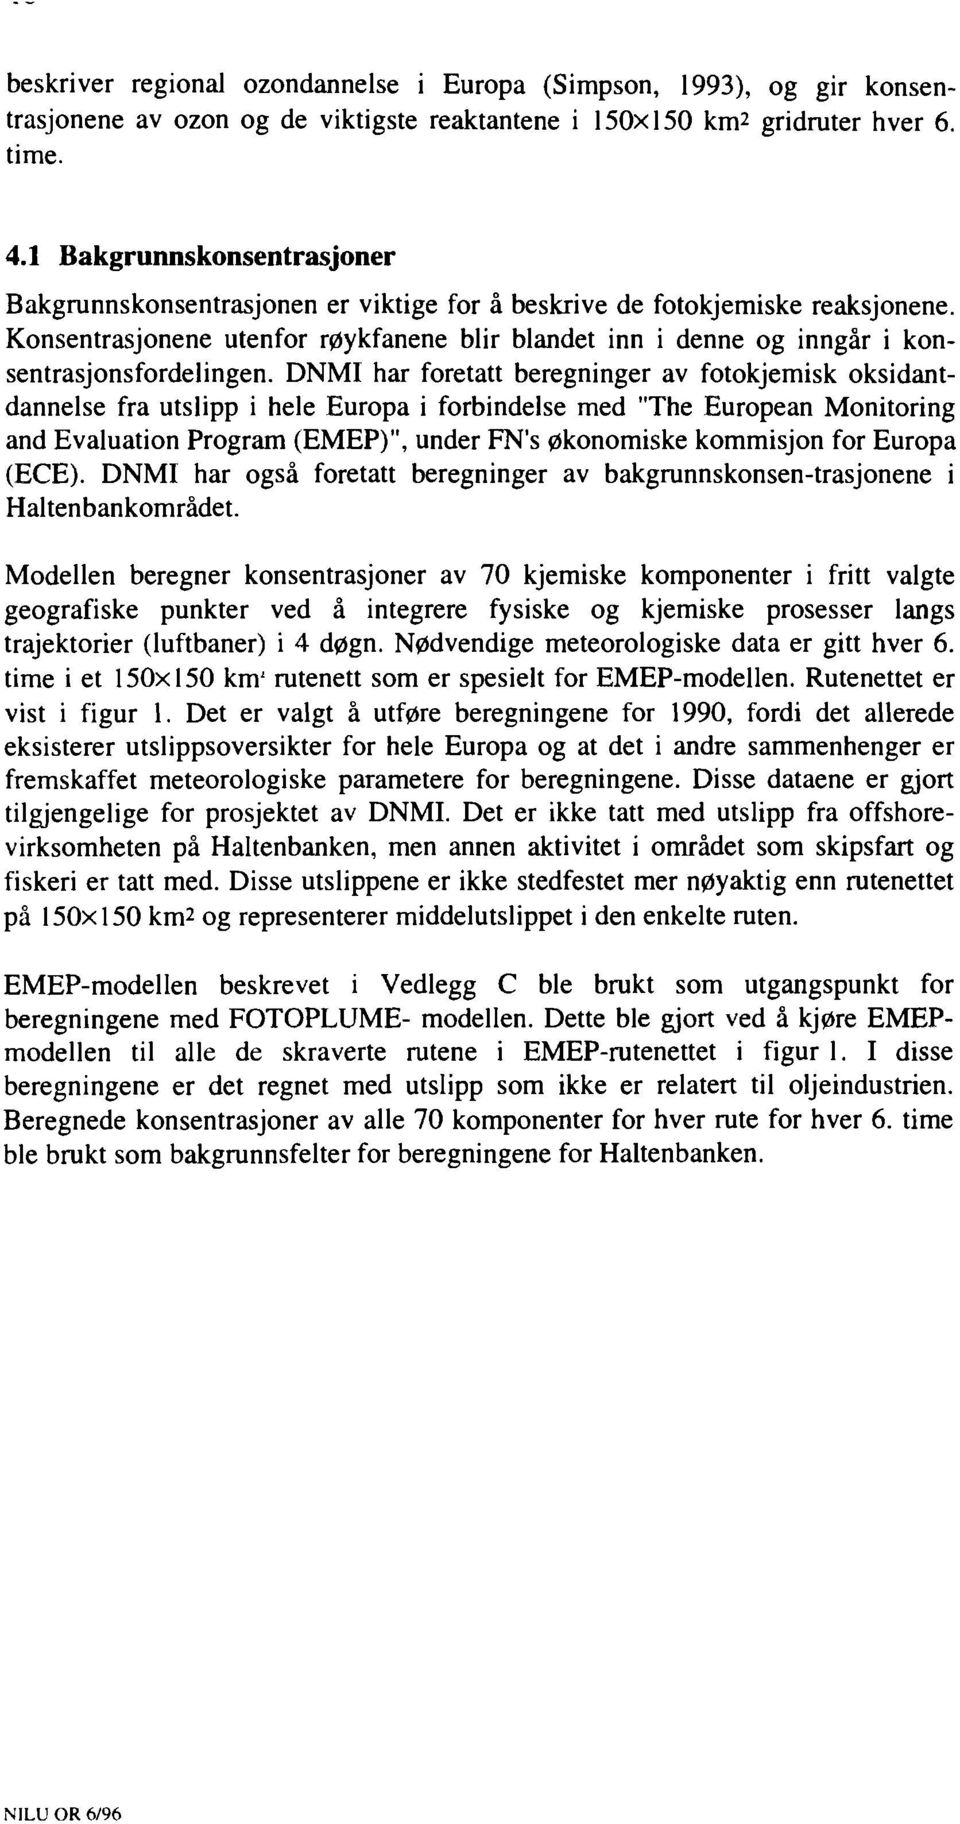 DNMI har fretatt beregninger av ftkjemisk ksidantdannelse fra utslipp i hele Eurpa i frbindelse med "The Eurpean Mnitring and Evaluatin Prgram (EMEP)", under FN's øknmiske kmmisjn fr Eurpa (ECE).